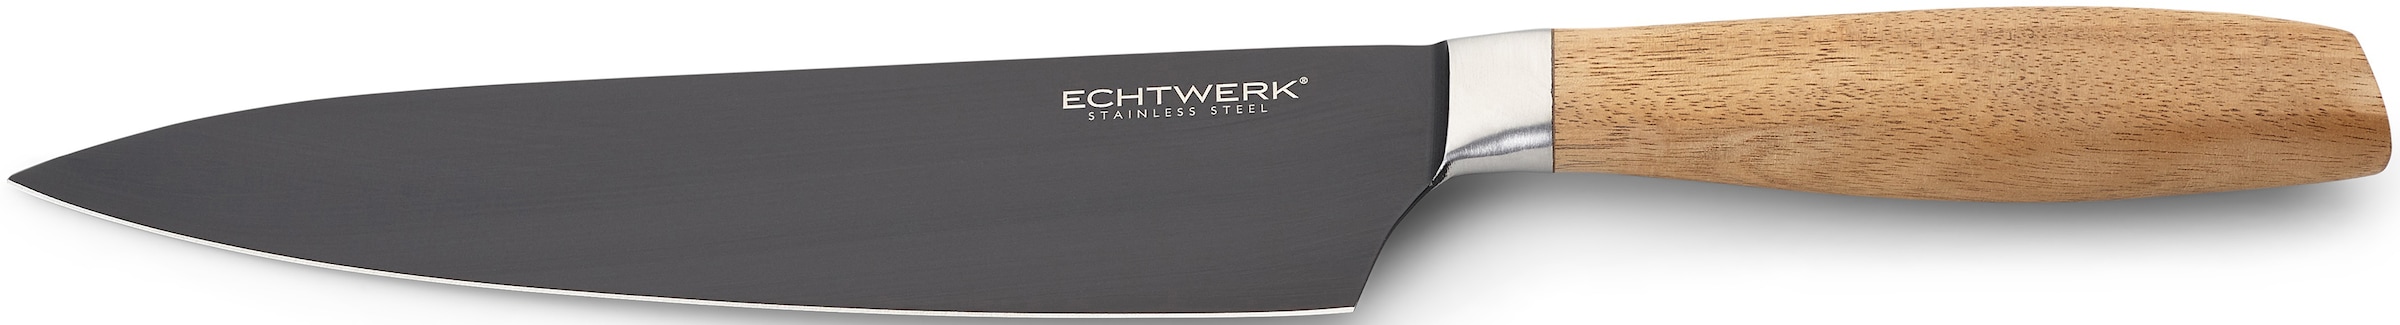 ECHTWERK Kochmesser »Classic«, (1 tlg.), aus hochwertigem Stahl, Akazienholzgriff, Black-Edition, 20 cm